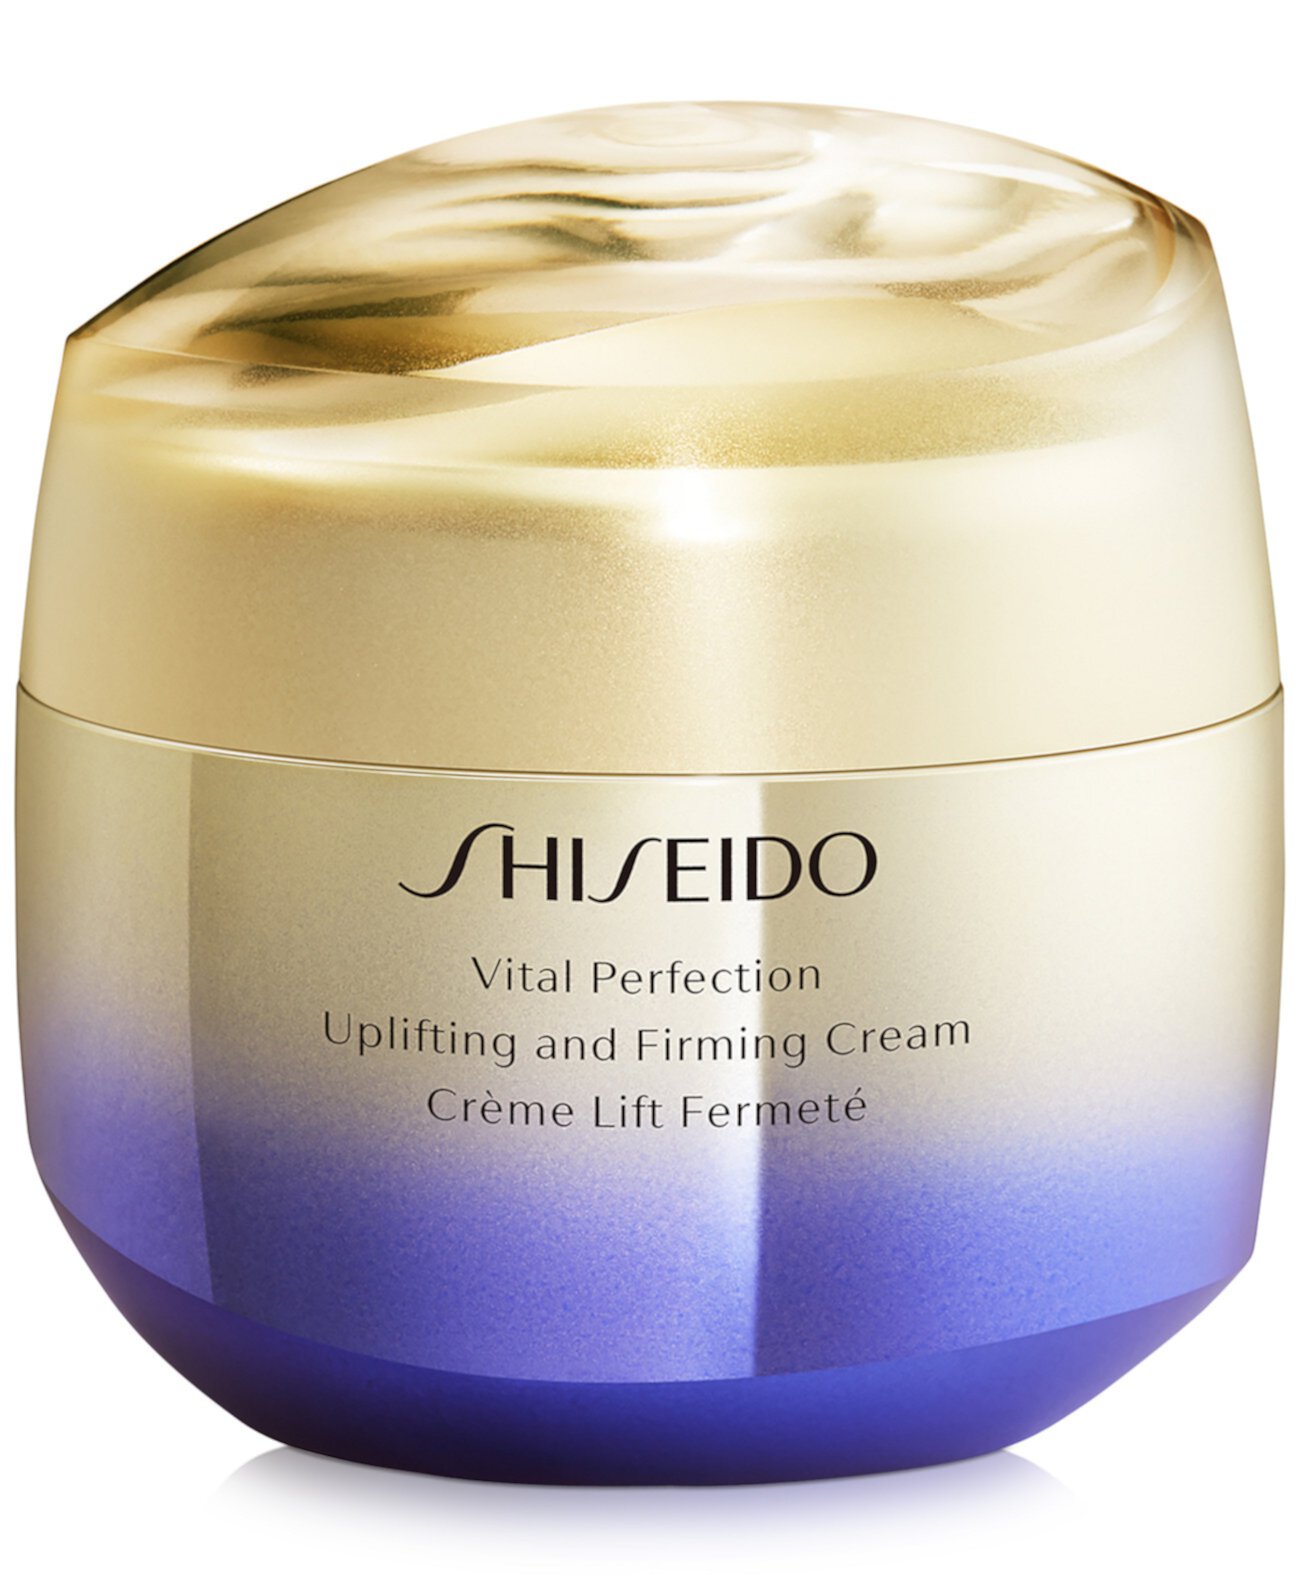 Подтягивающий и укрепляющий крем Vital Perfection, 2,6 унции. Shiseido